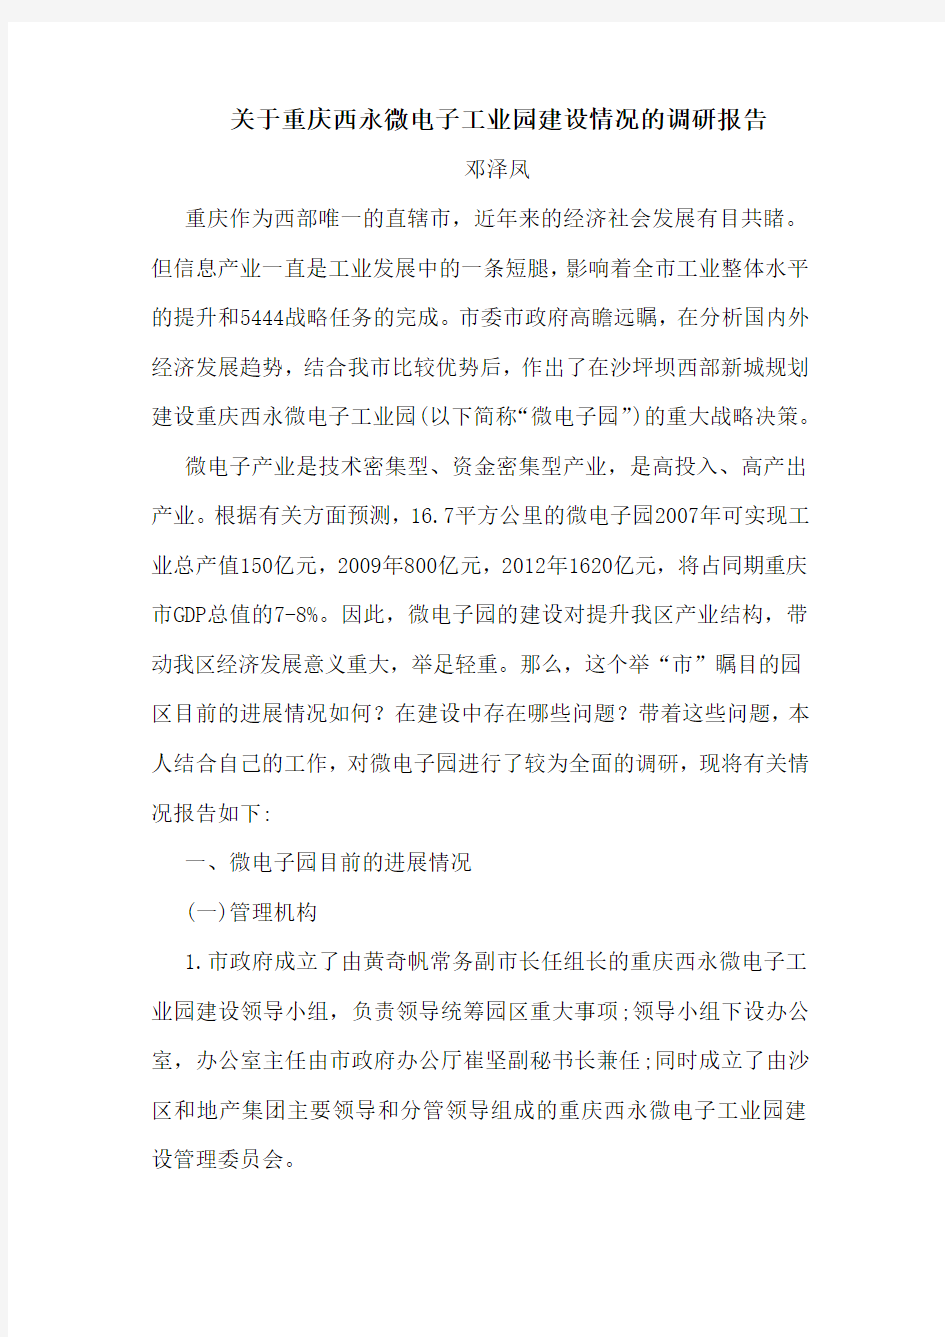 1、关于重庆西永微电子工业园建设情况的调研报告